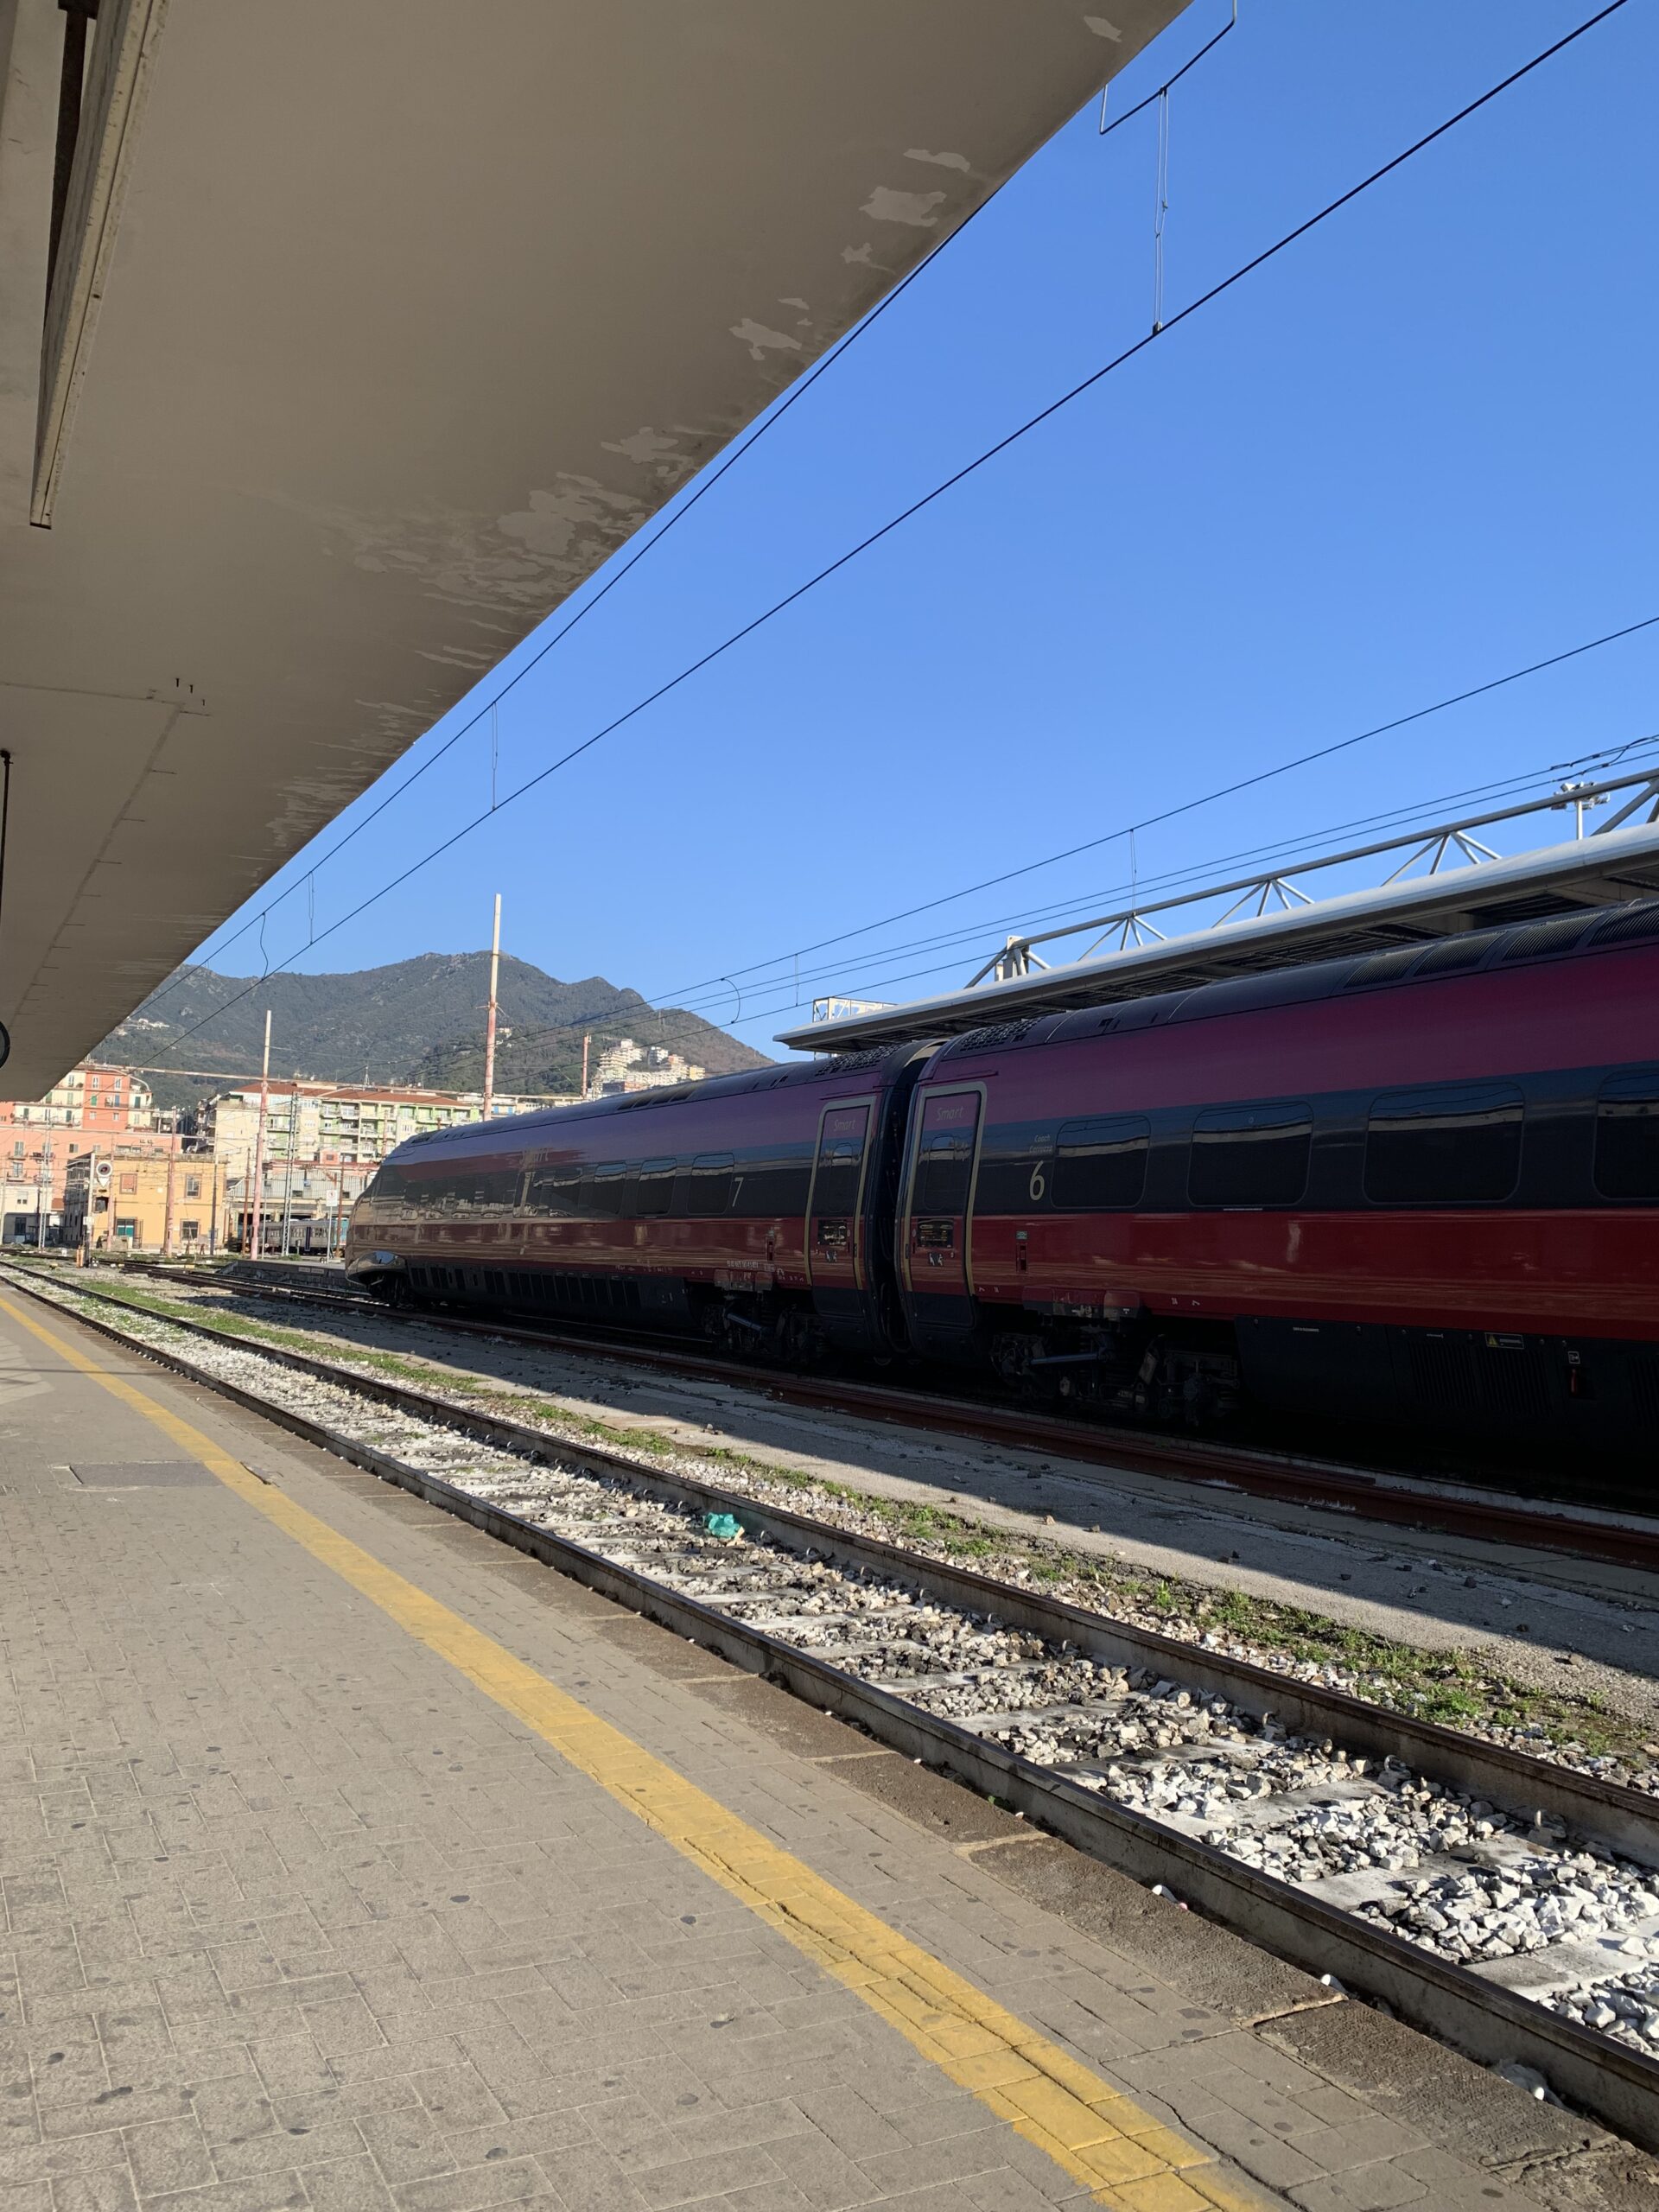 Hogesnelheidstrein van Italo Treno op een station in Salerno Campanië in Italië.